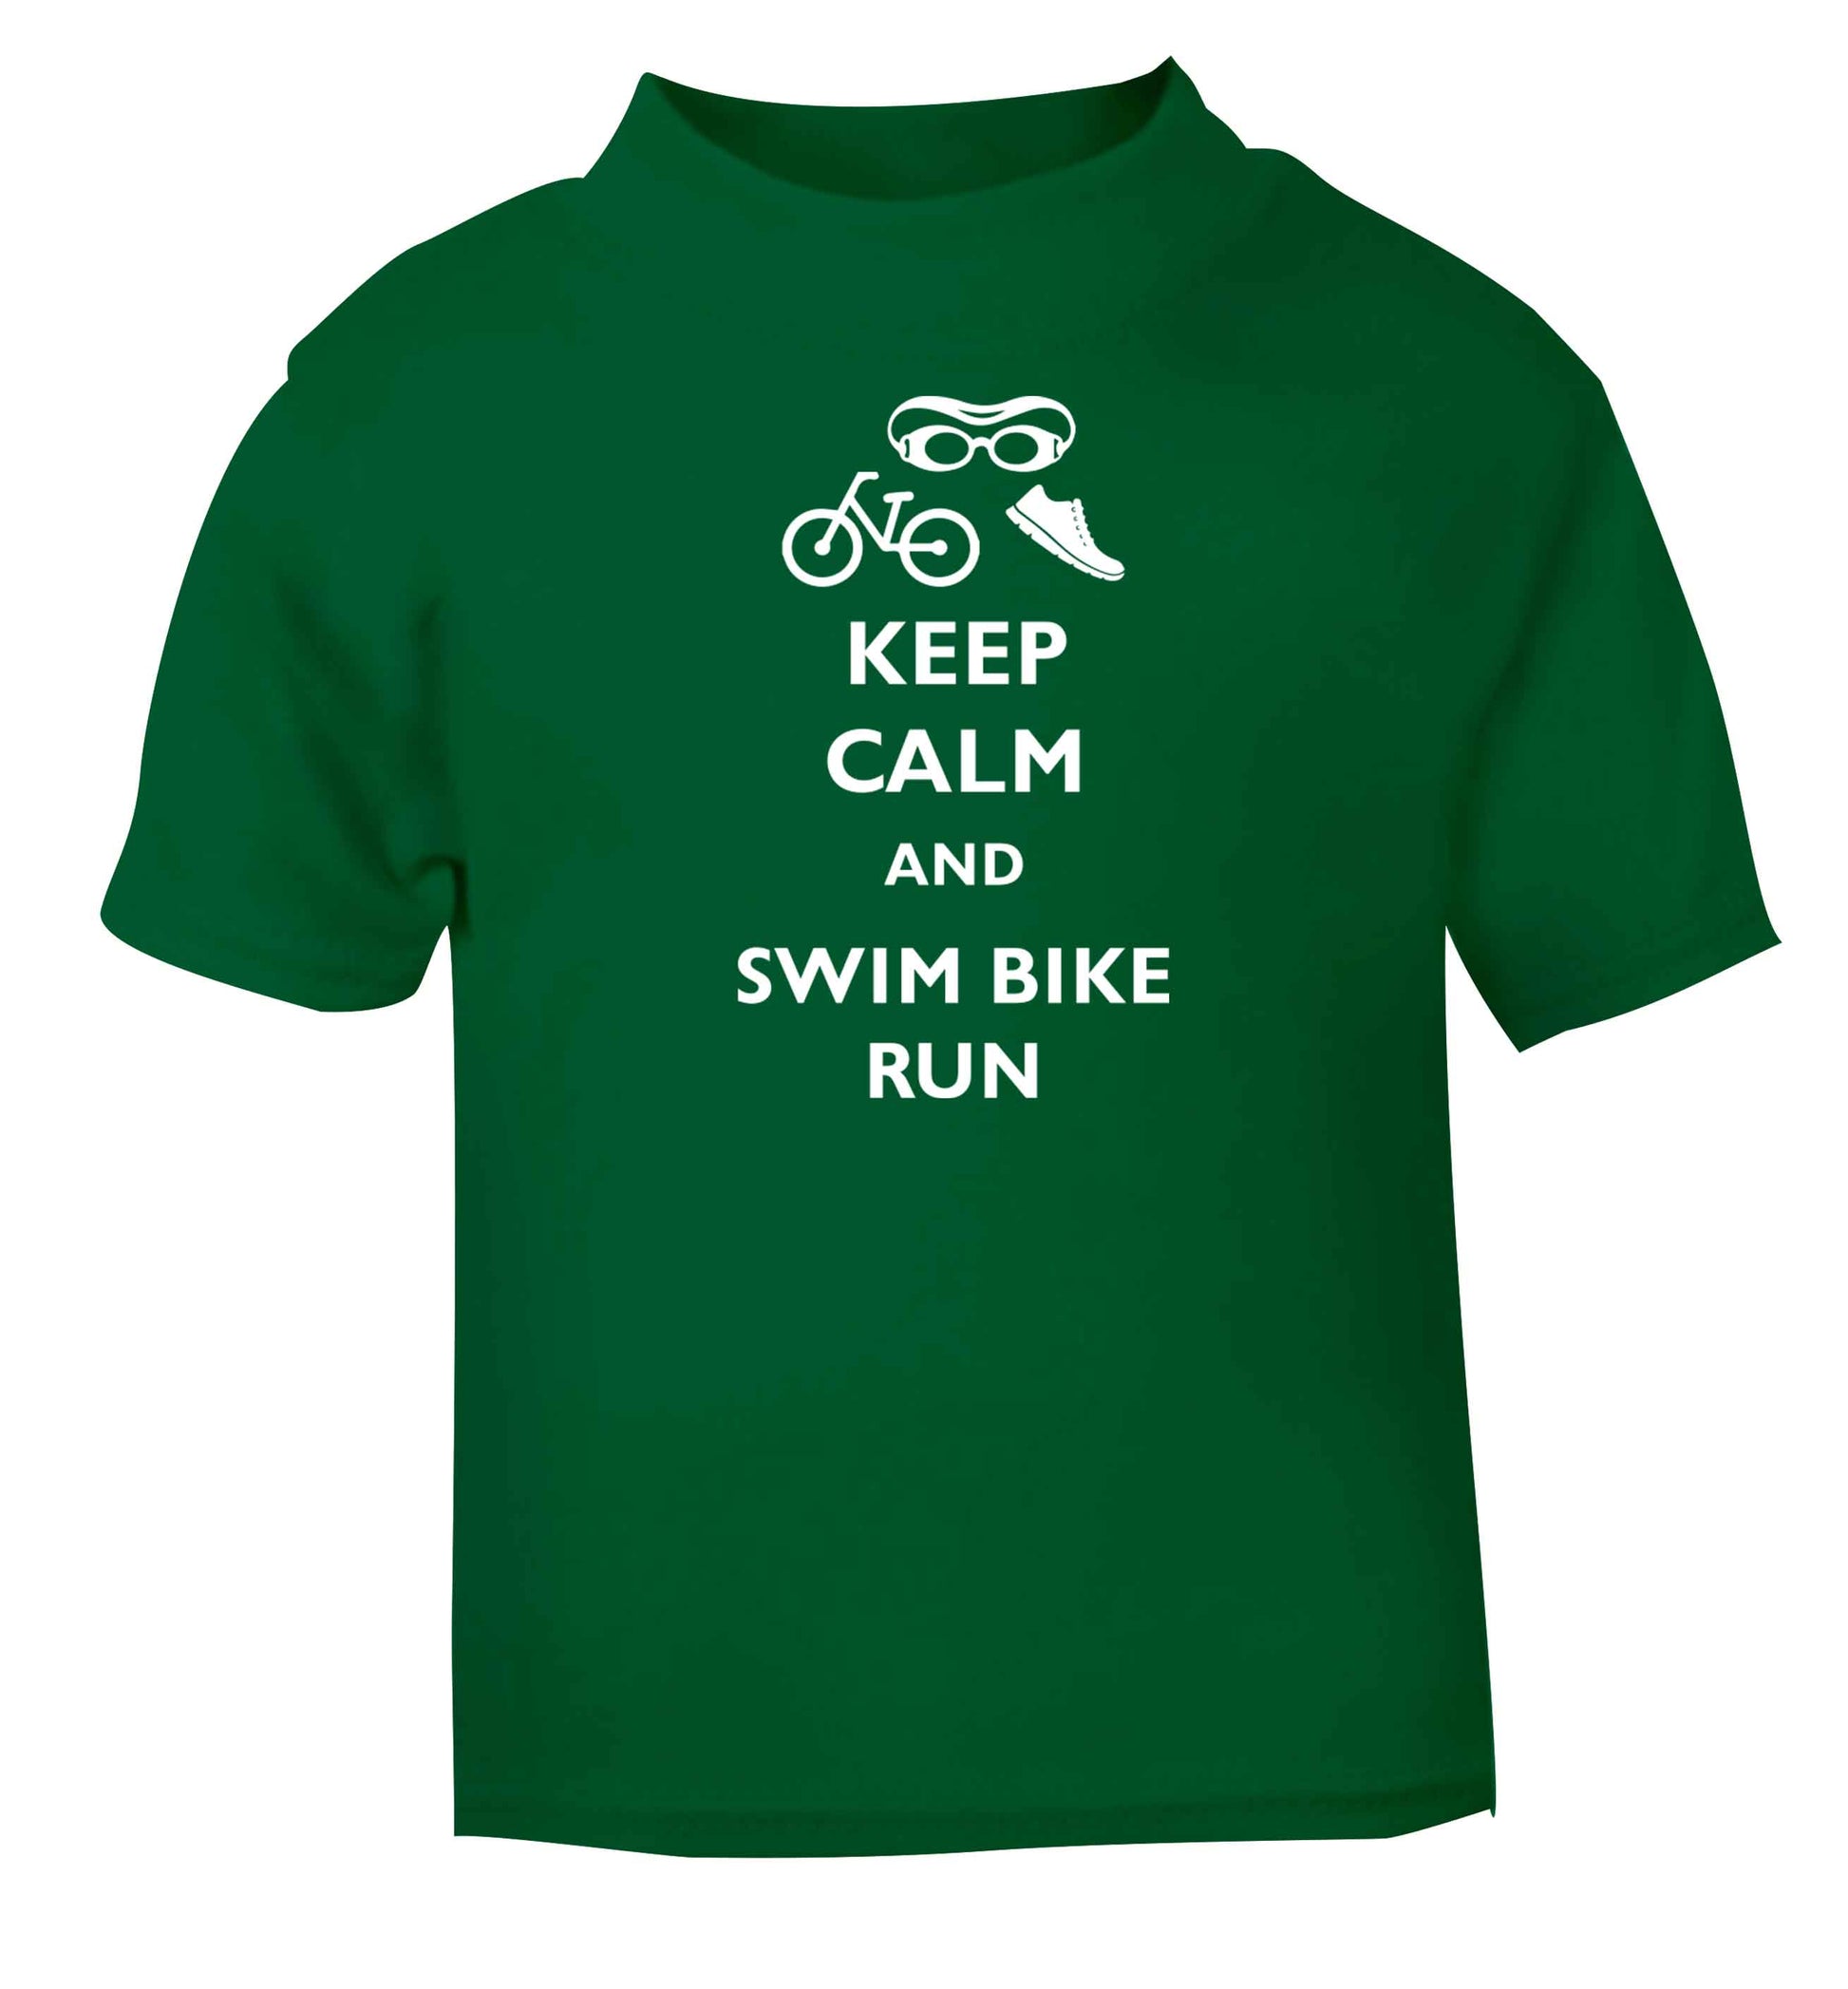 Keep calm and swim bike run green baby toddler Tshirt 2 Years